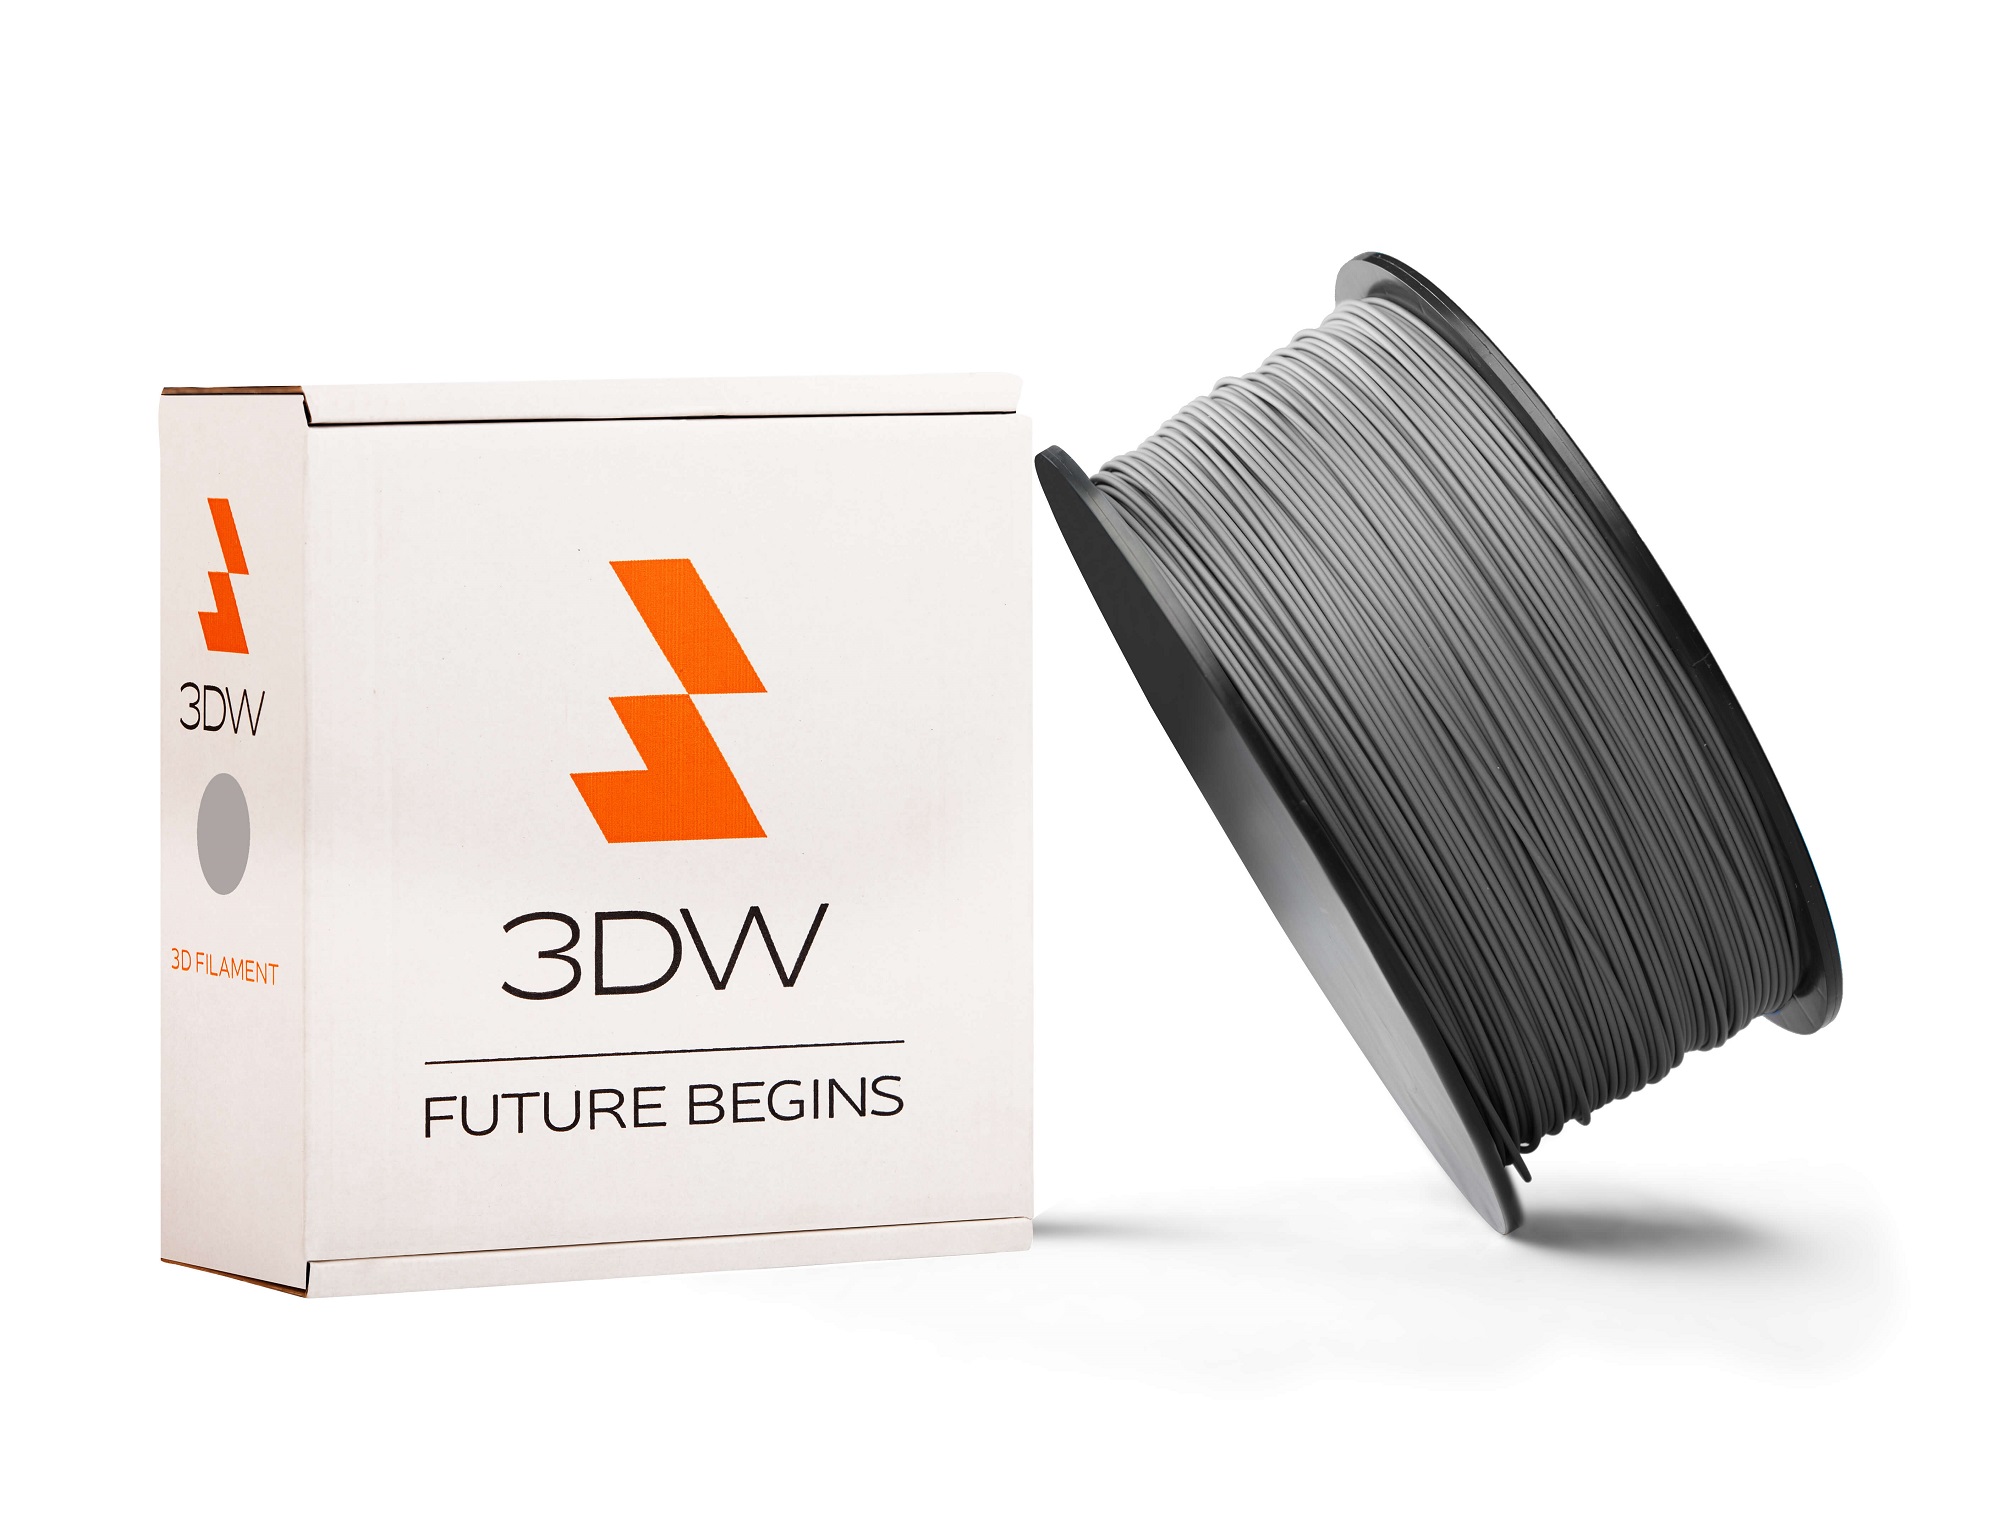 3DW - PLA filament 1,75mm šedá, 0,5 kg,tisk190-210°C